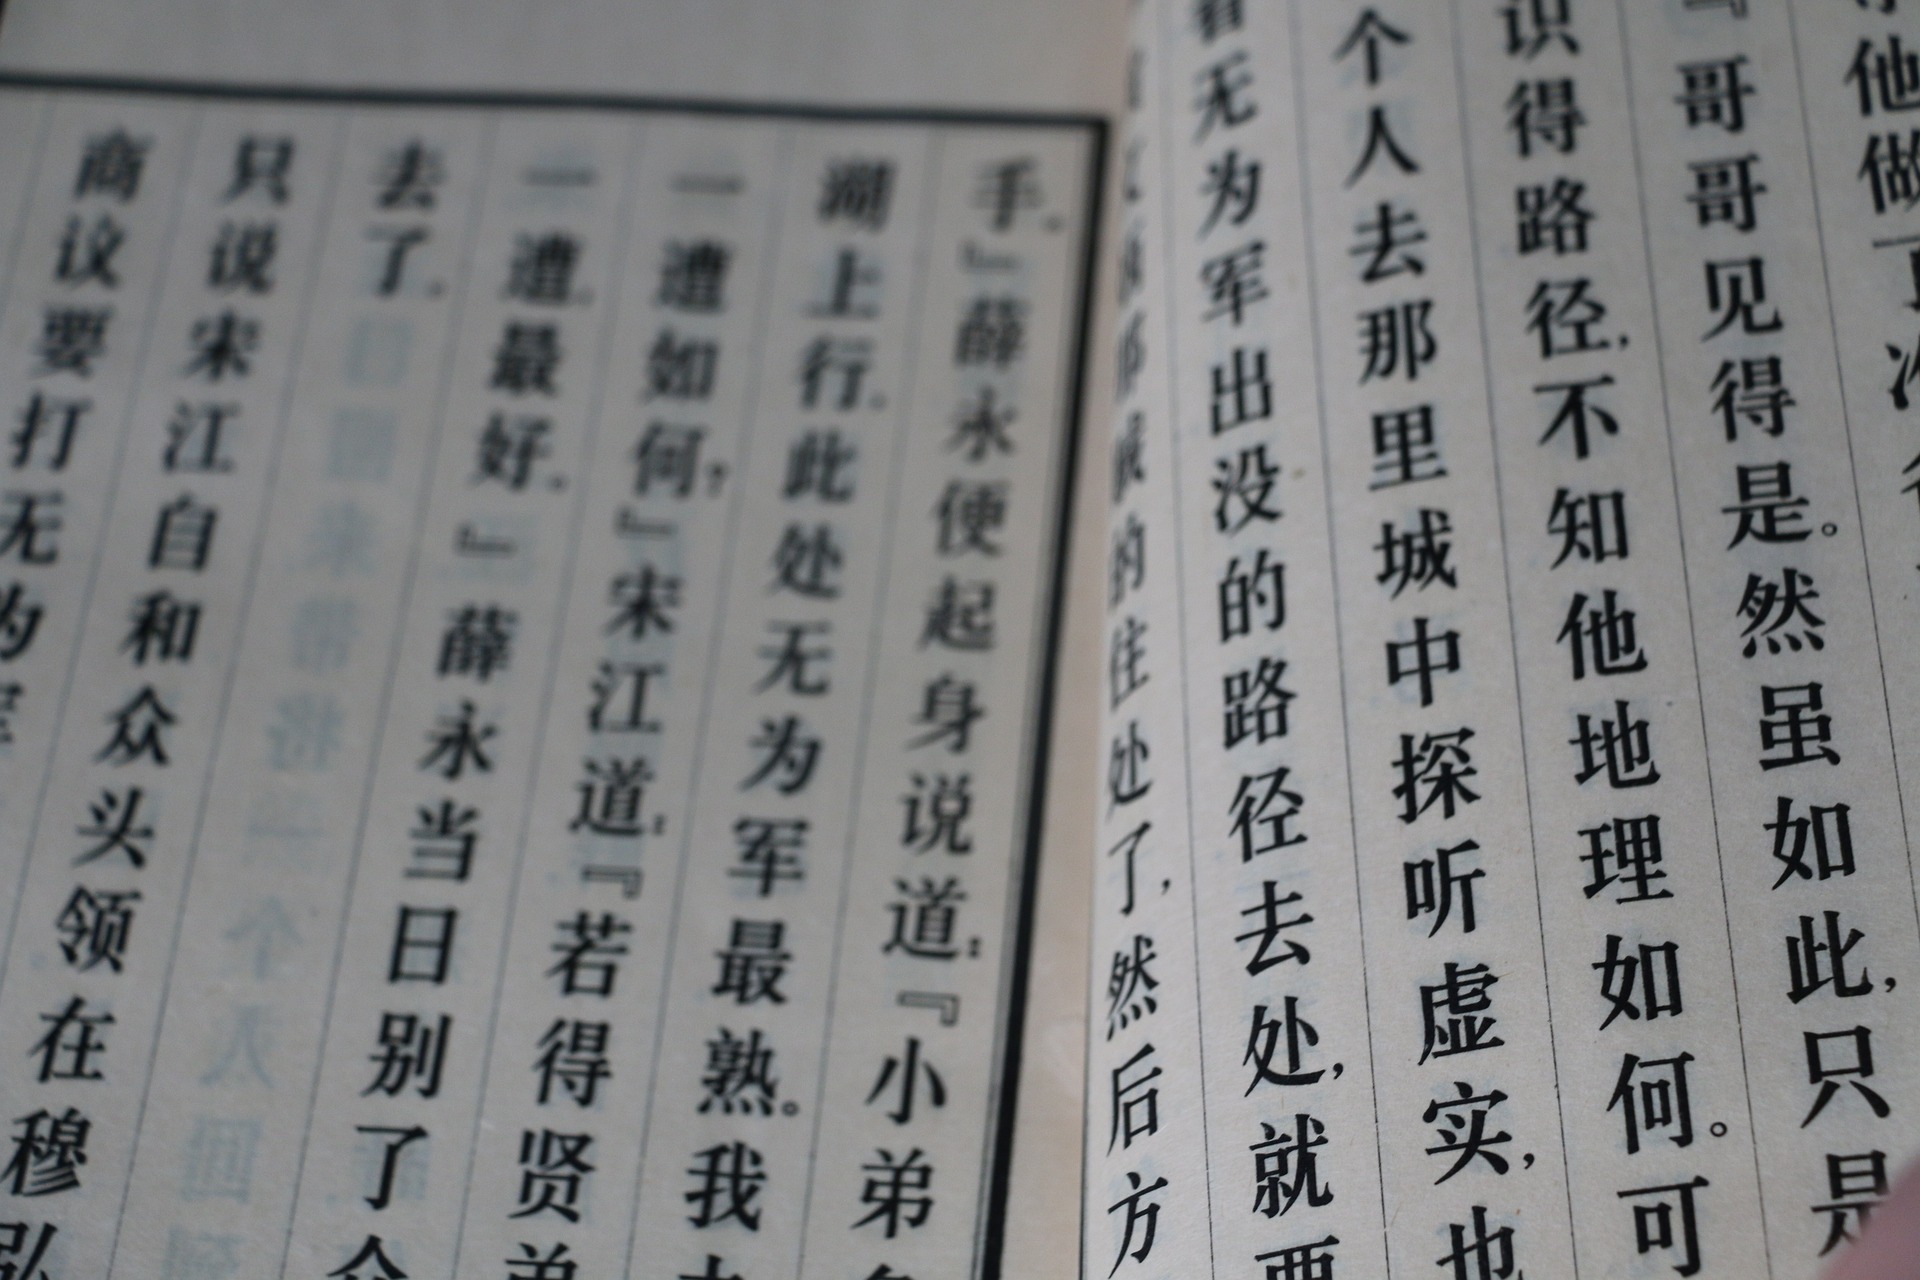 I CHENGYU – Frasi tipiche della lingua cinese